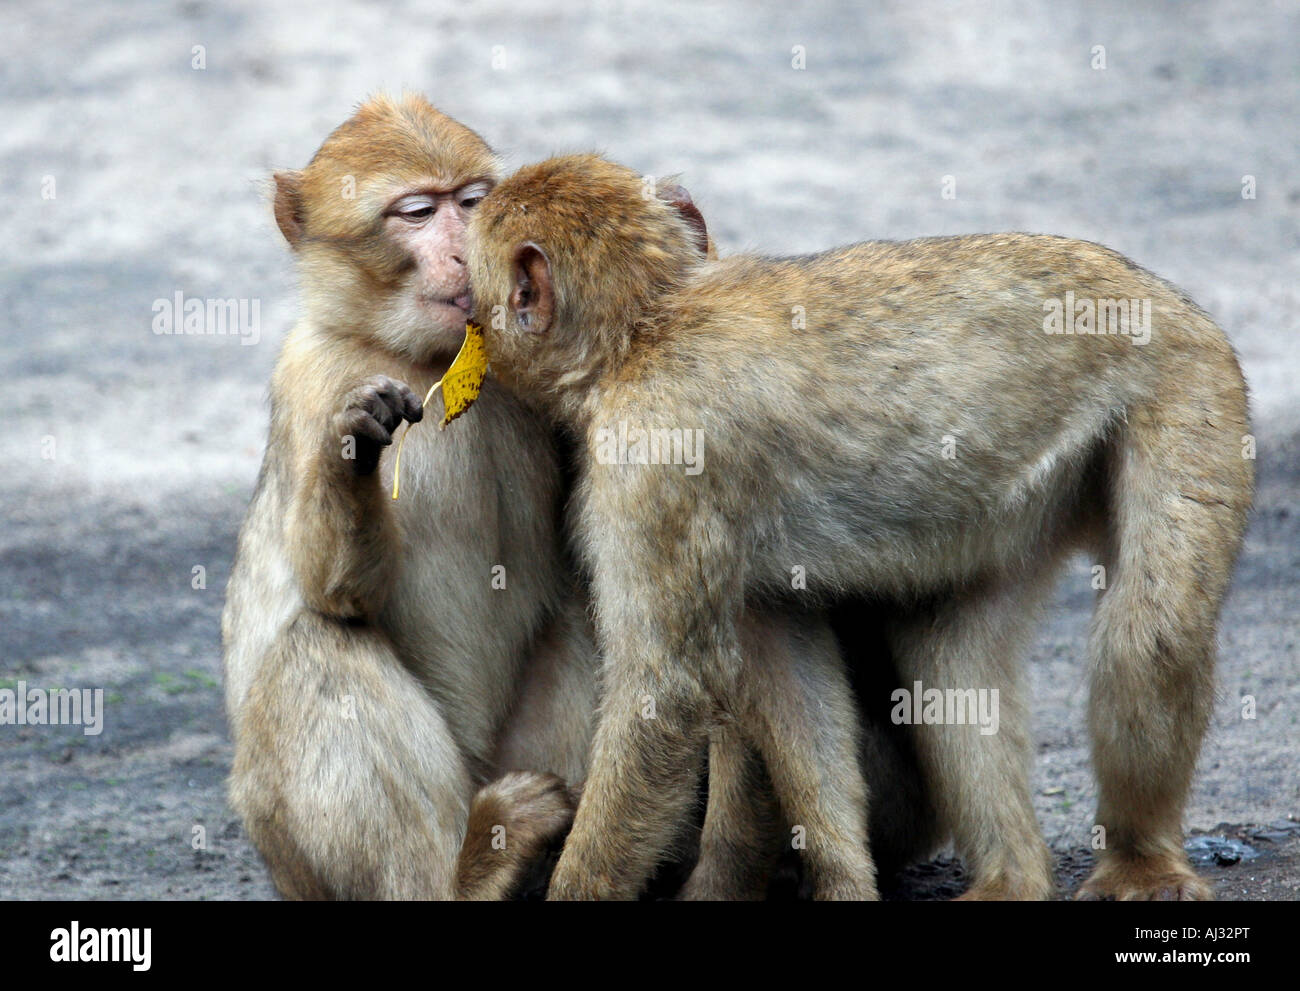 Due baciare le scimmie visto sulla riserva naturale in Kenya, Africa. Uno è in possesso di una foglia. Foto Stock